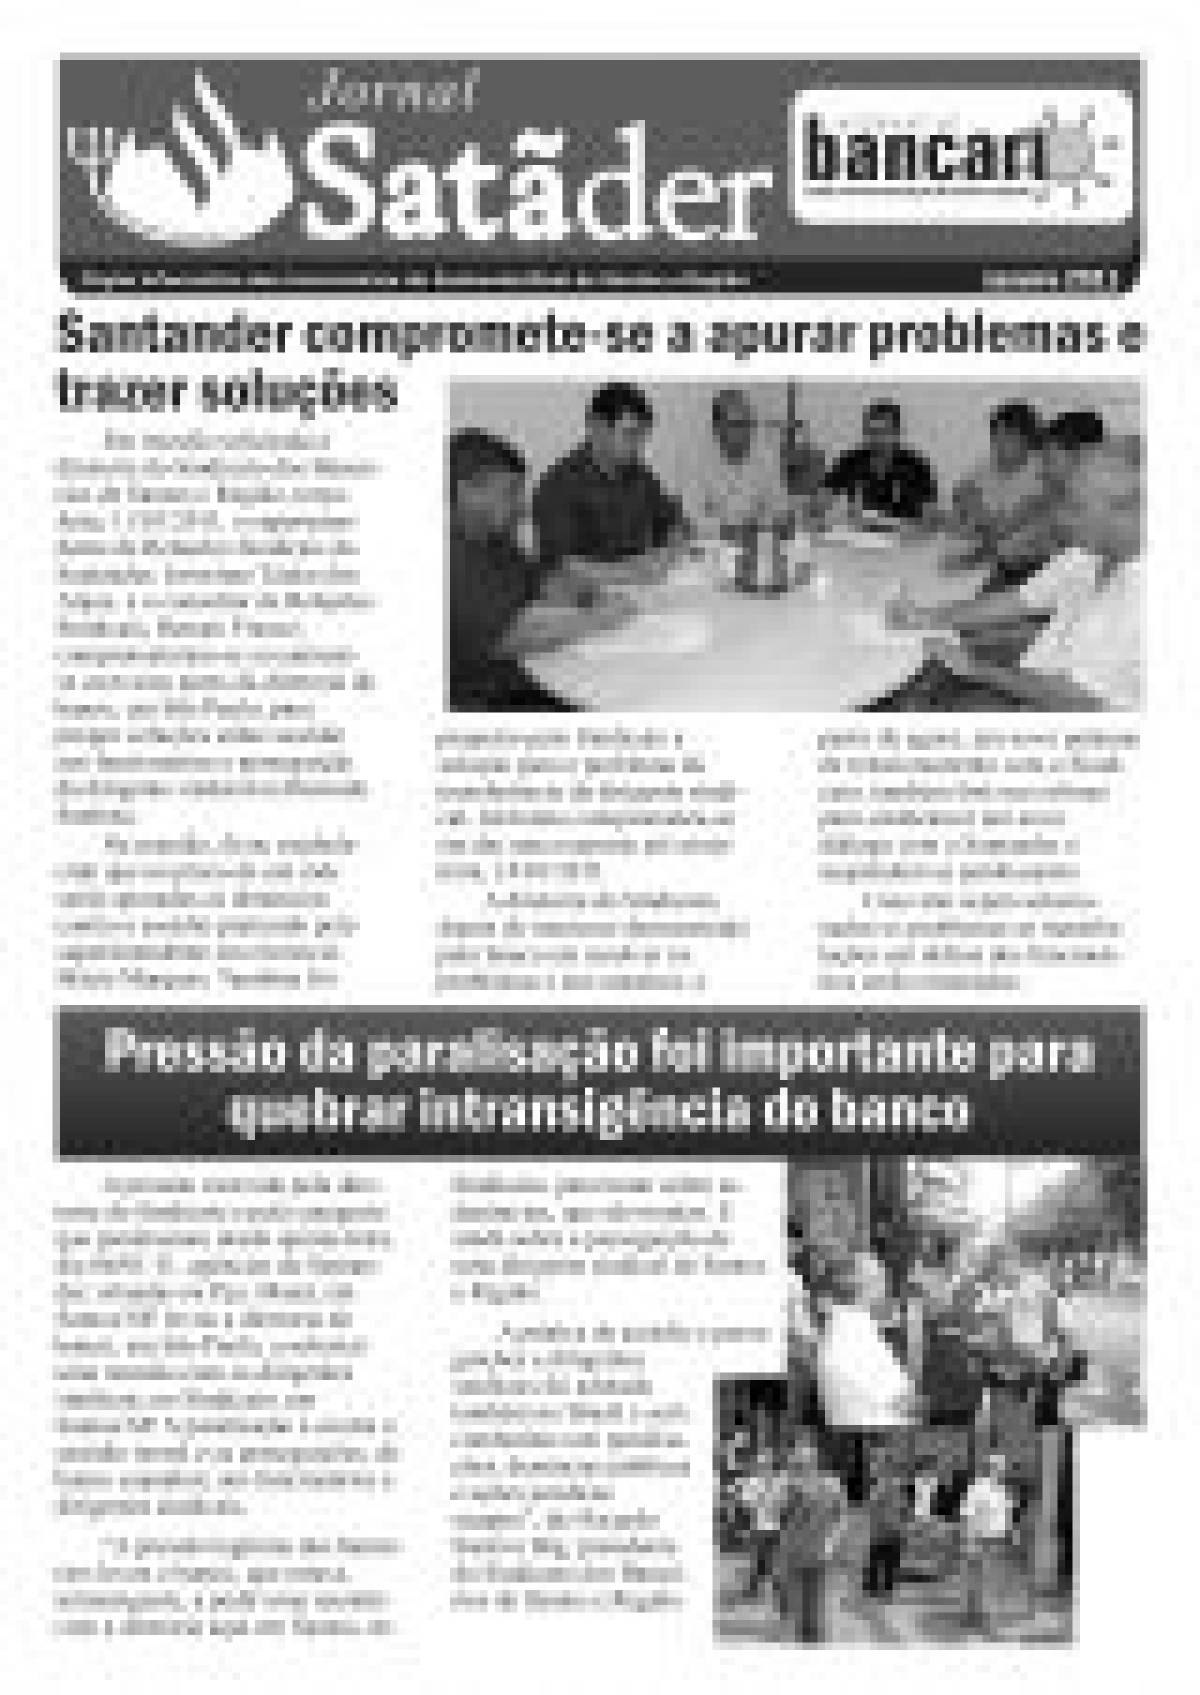 Santander compromete-se a apurar problemas e trazer soluções